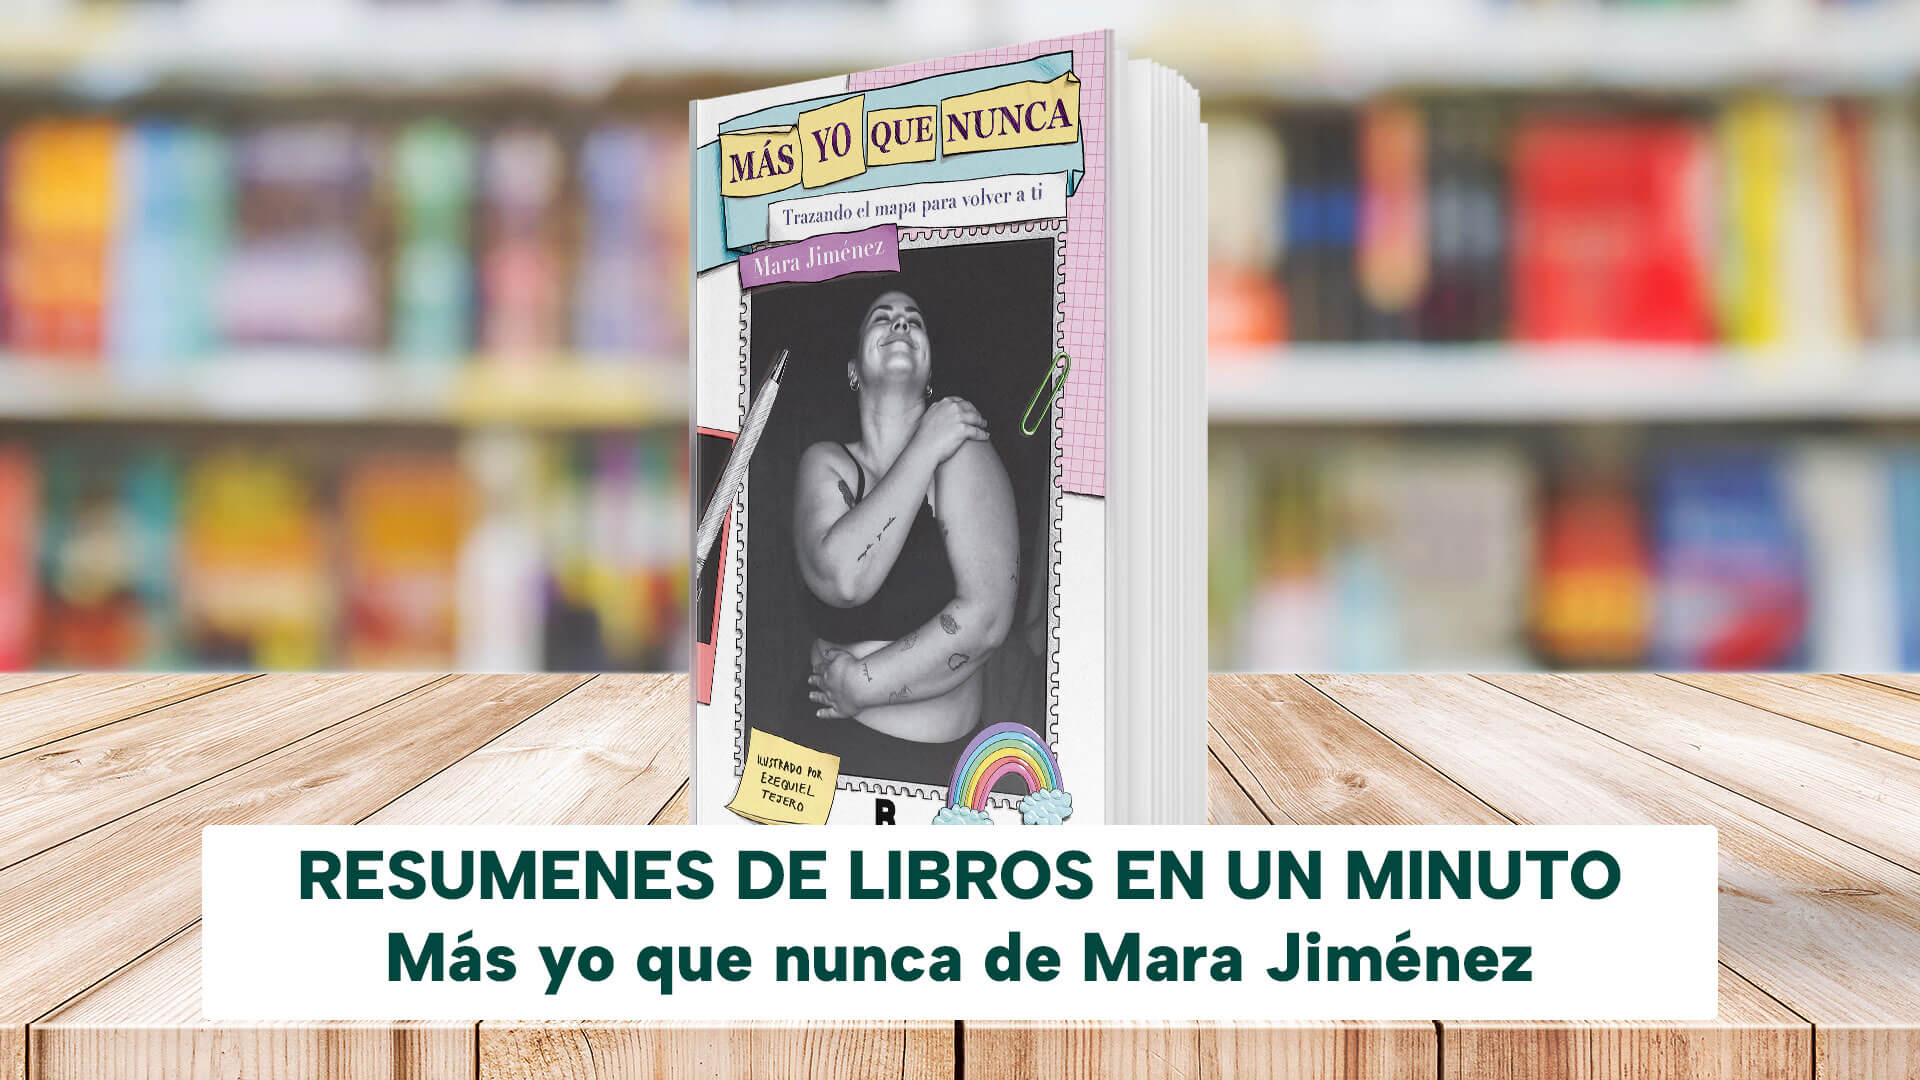 Mas yo que nunca de Mara Jiménez - Resumen del libro